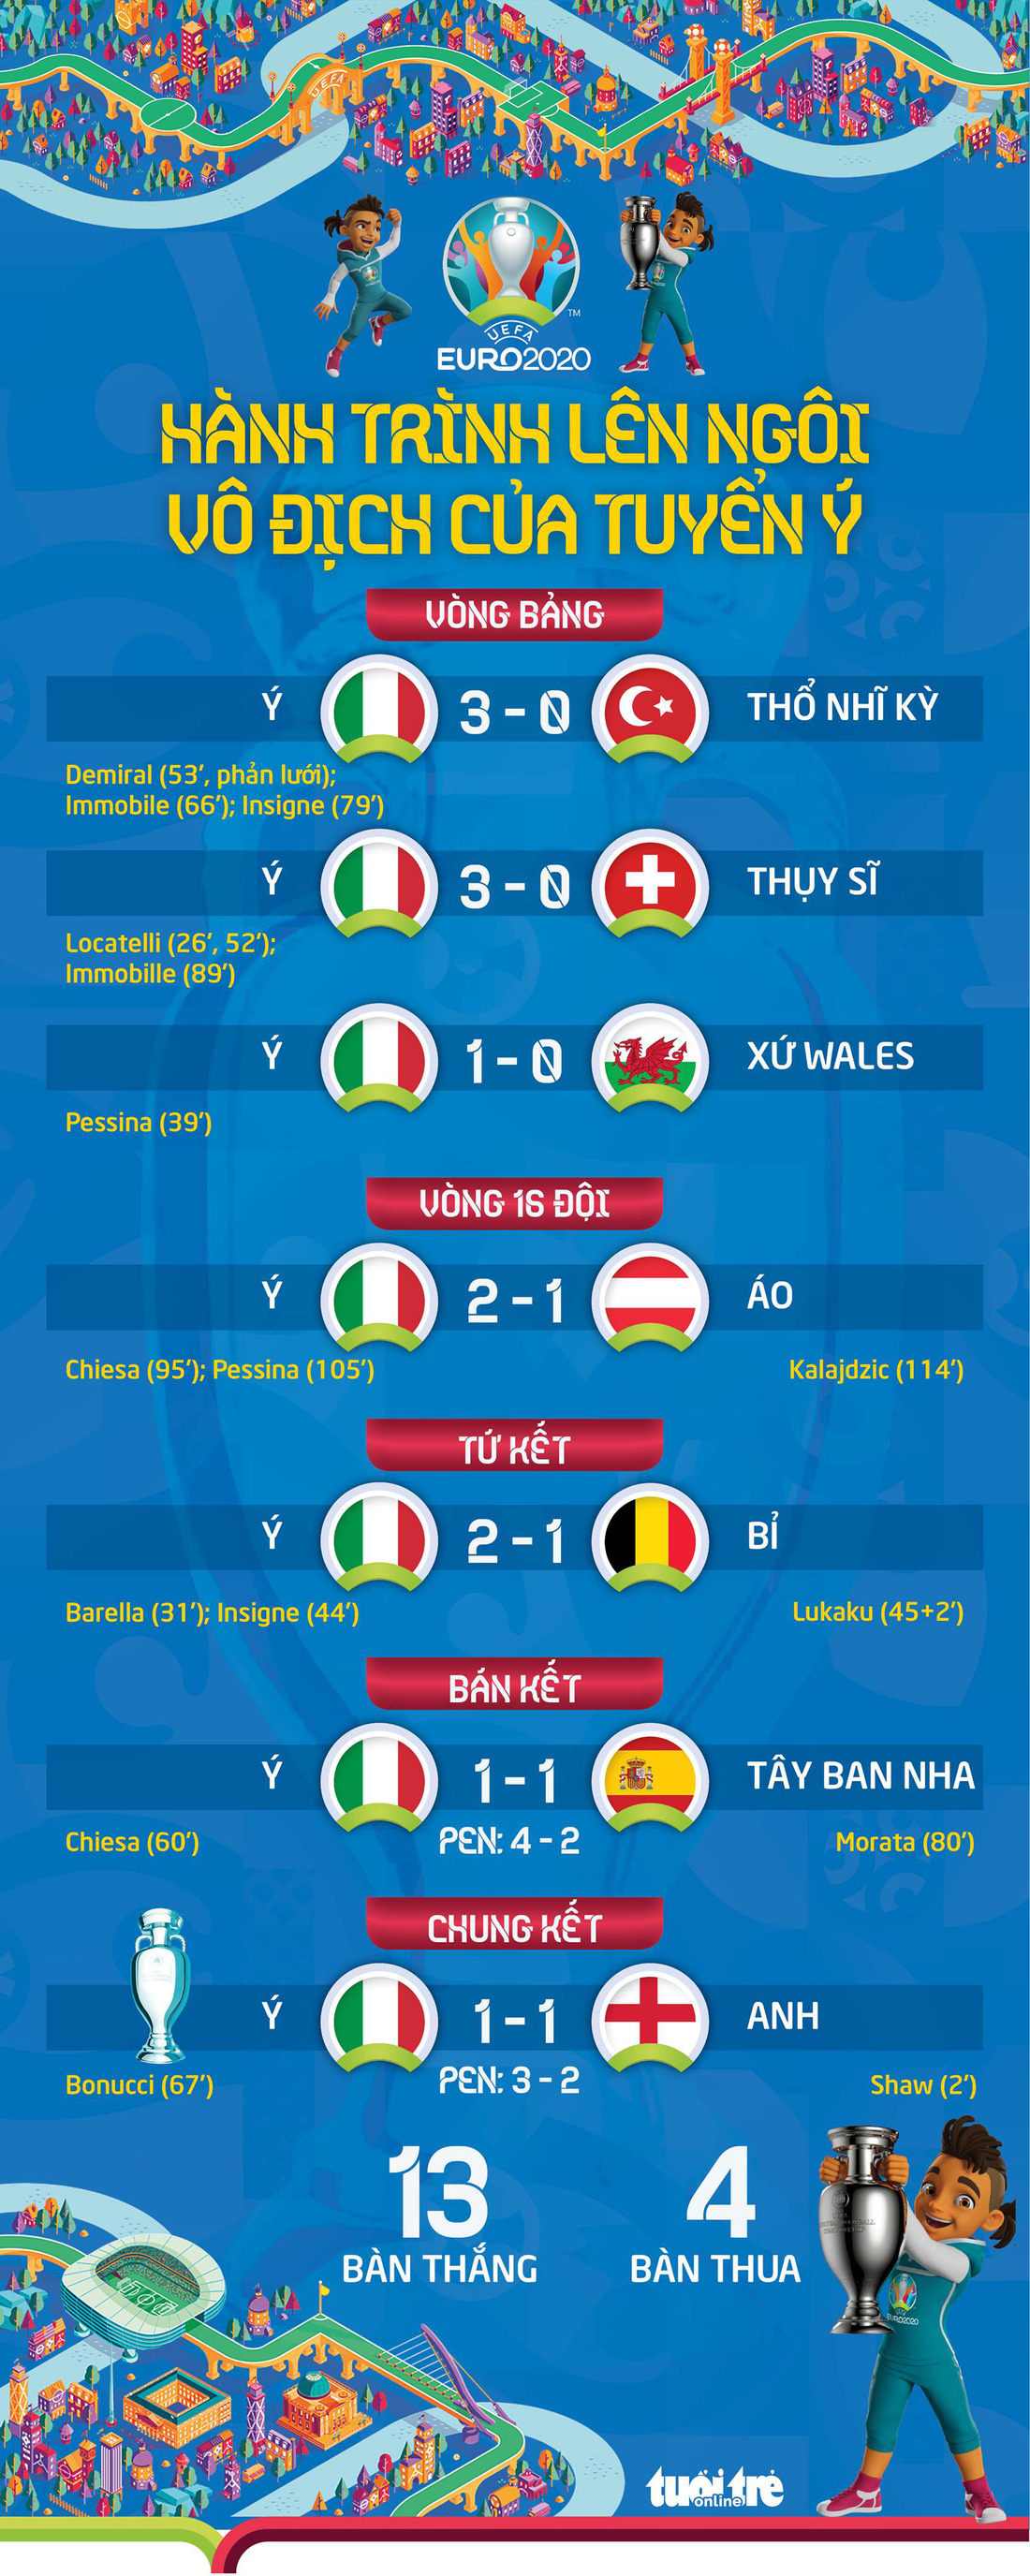 Xem lại hành trình lên ngôi vô địch Euro 2020 của tuyển Ý - Ảnh 1.